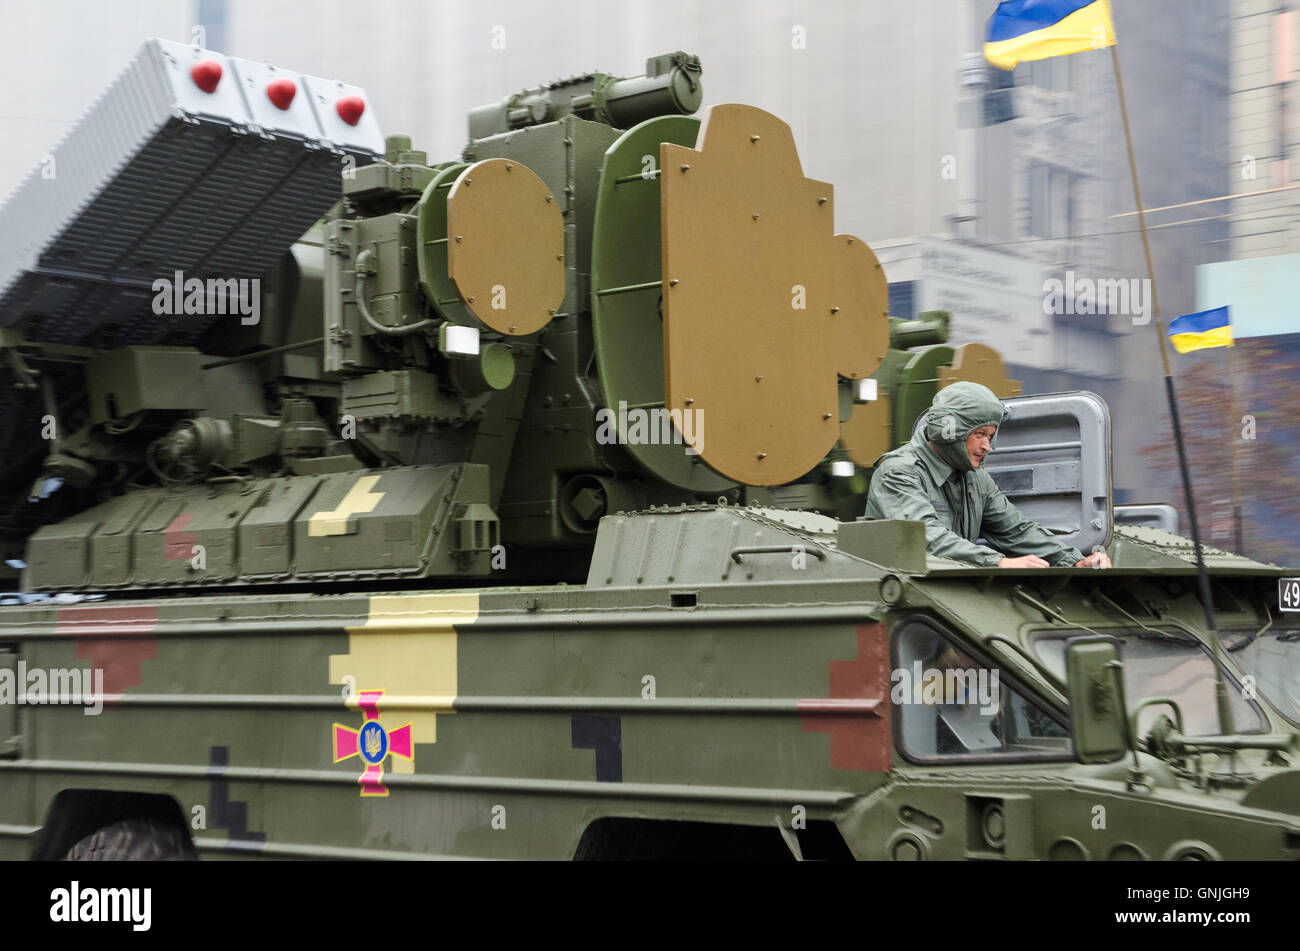 Military parade in the Ukrainian capital Stock Photo